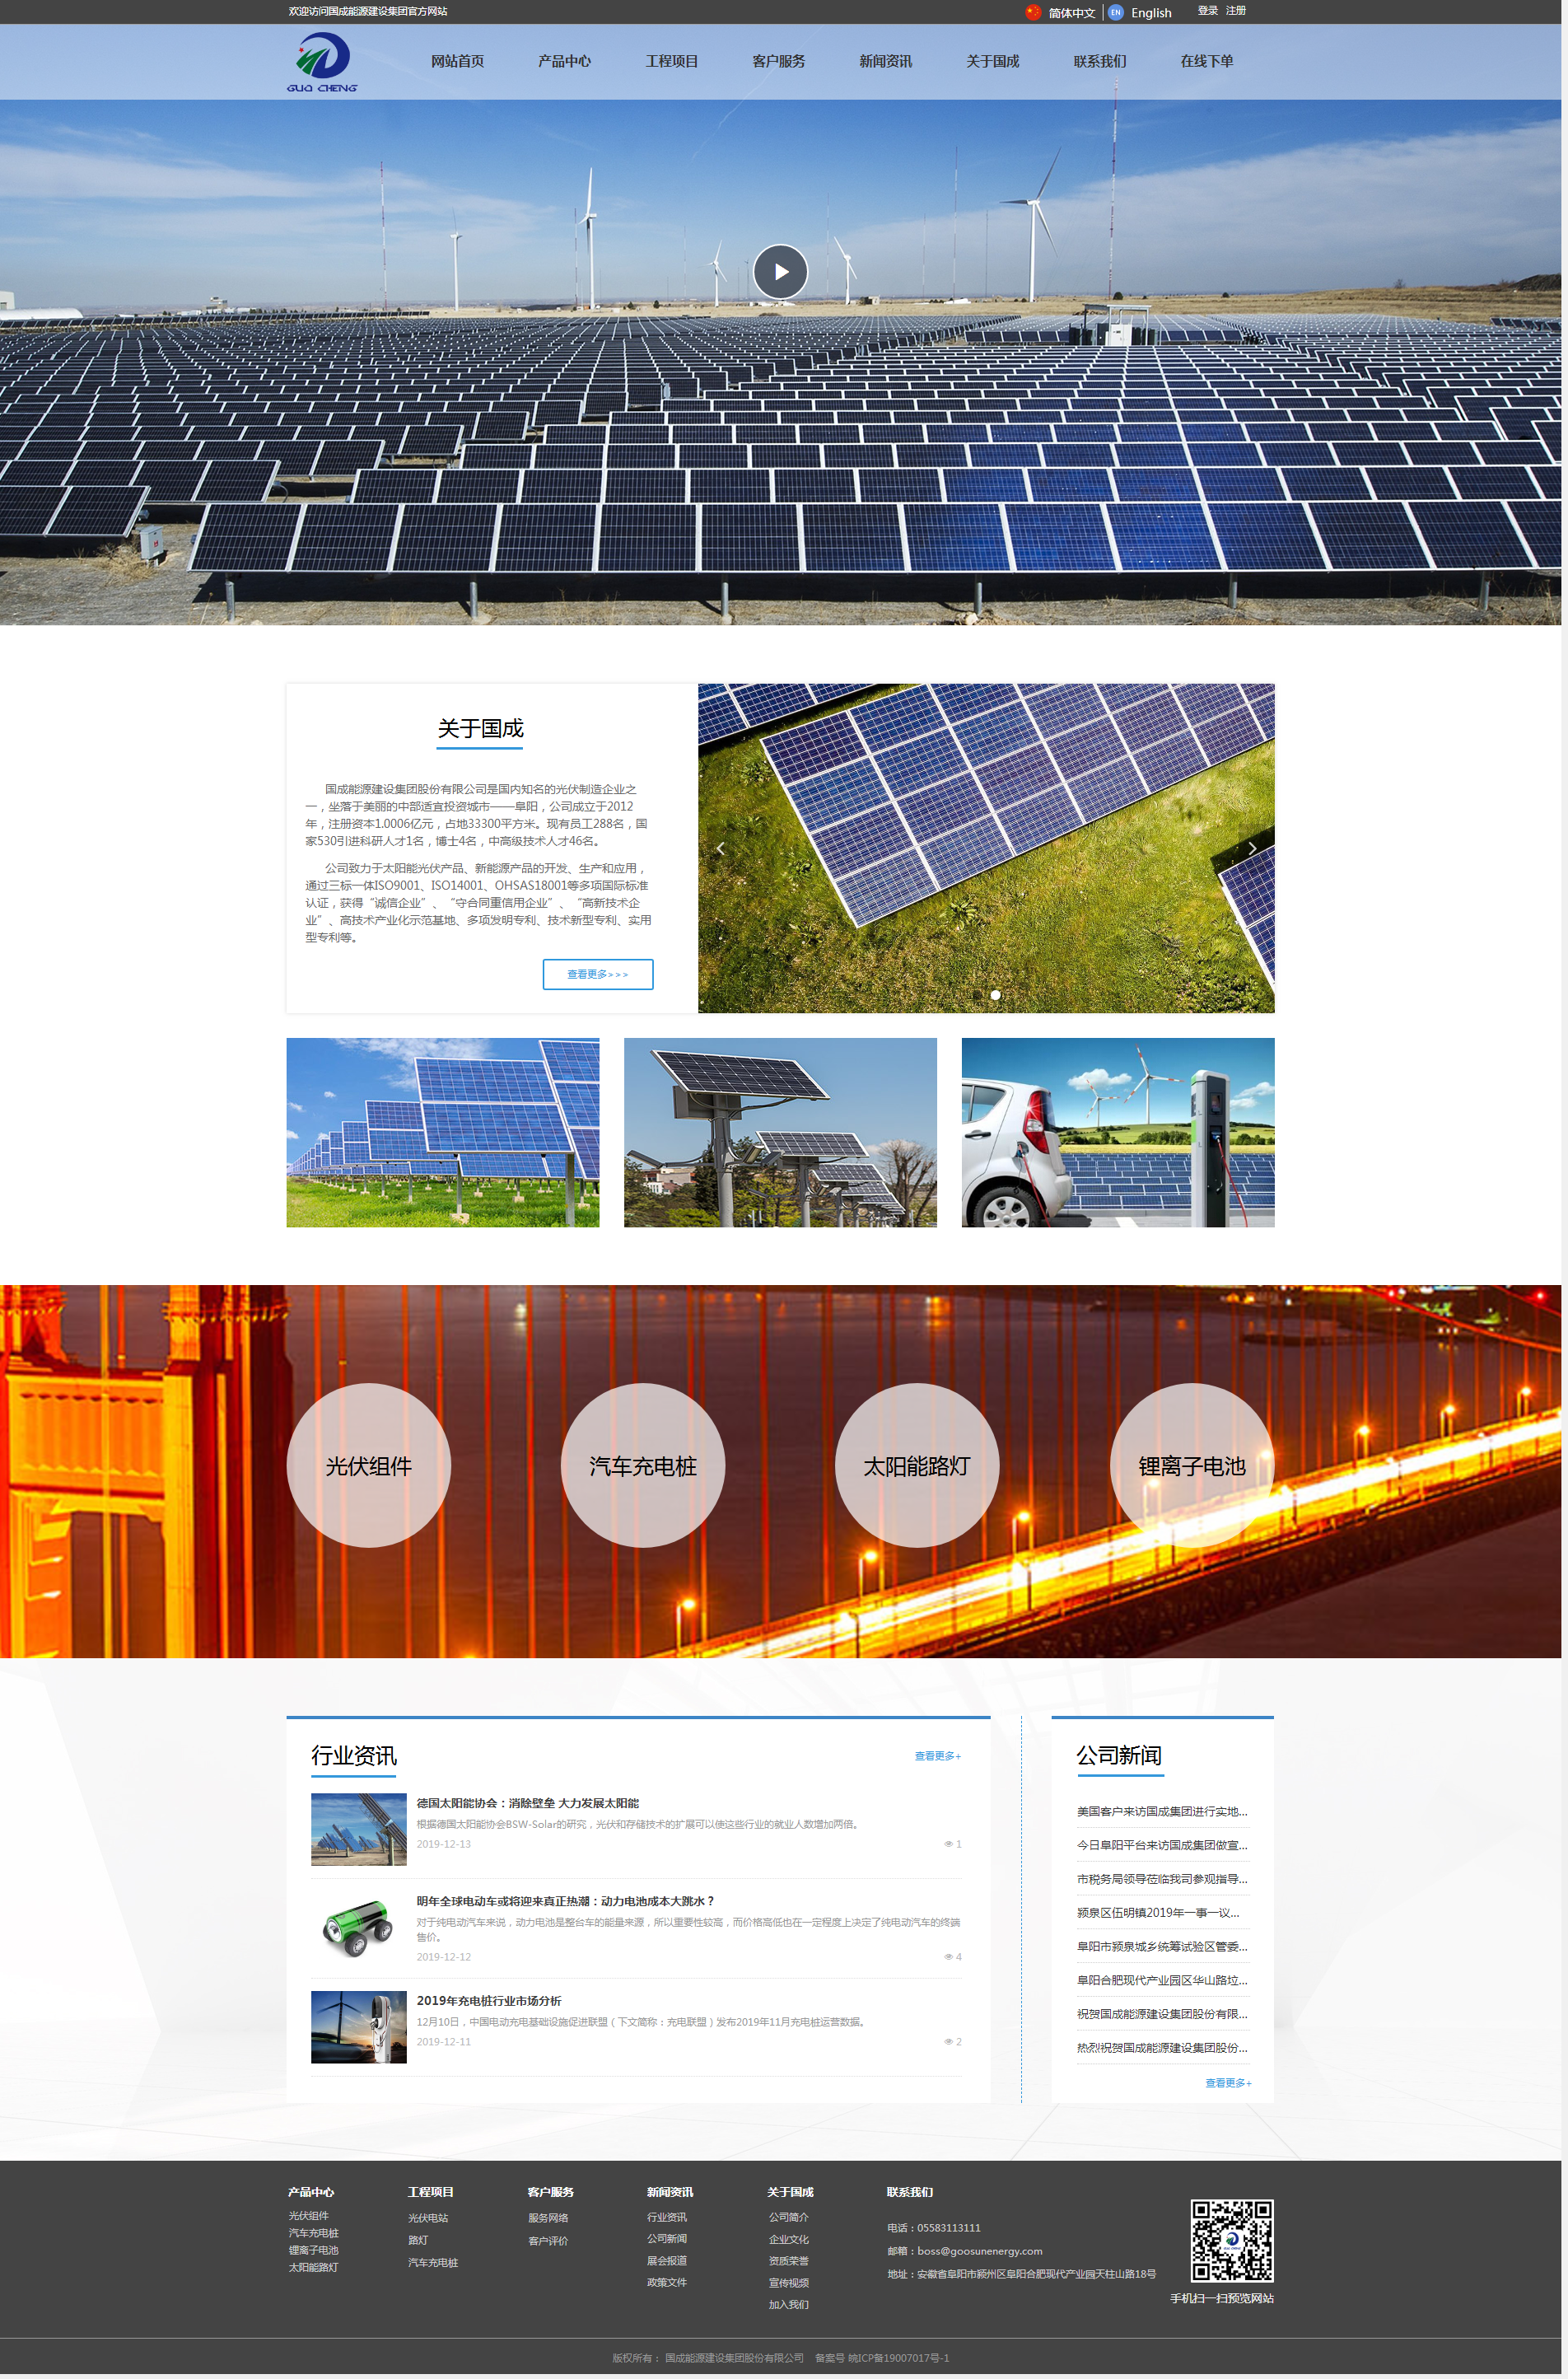 太阳能光伏组件-国成能源建设集团股份有限公司